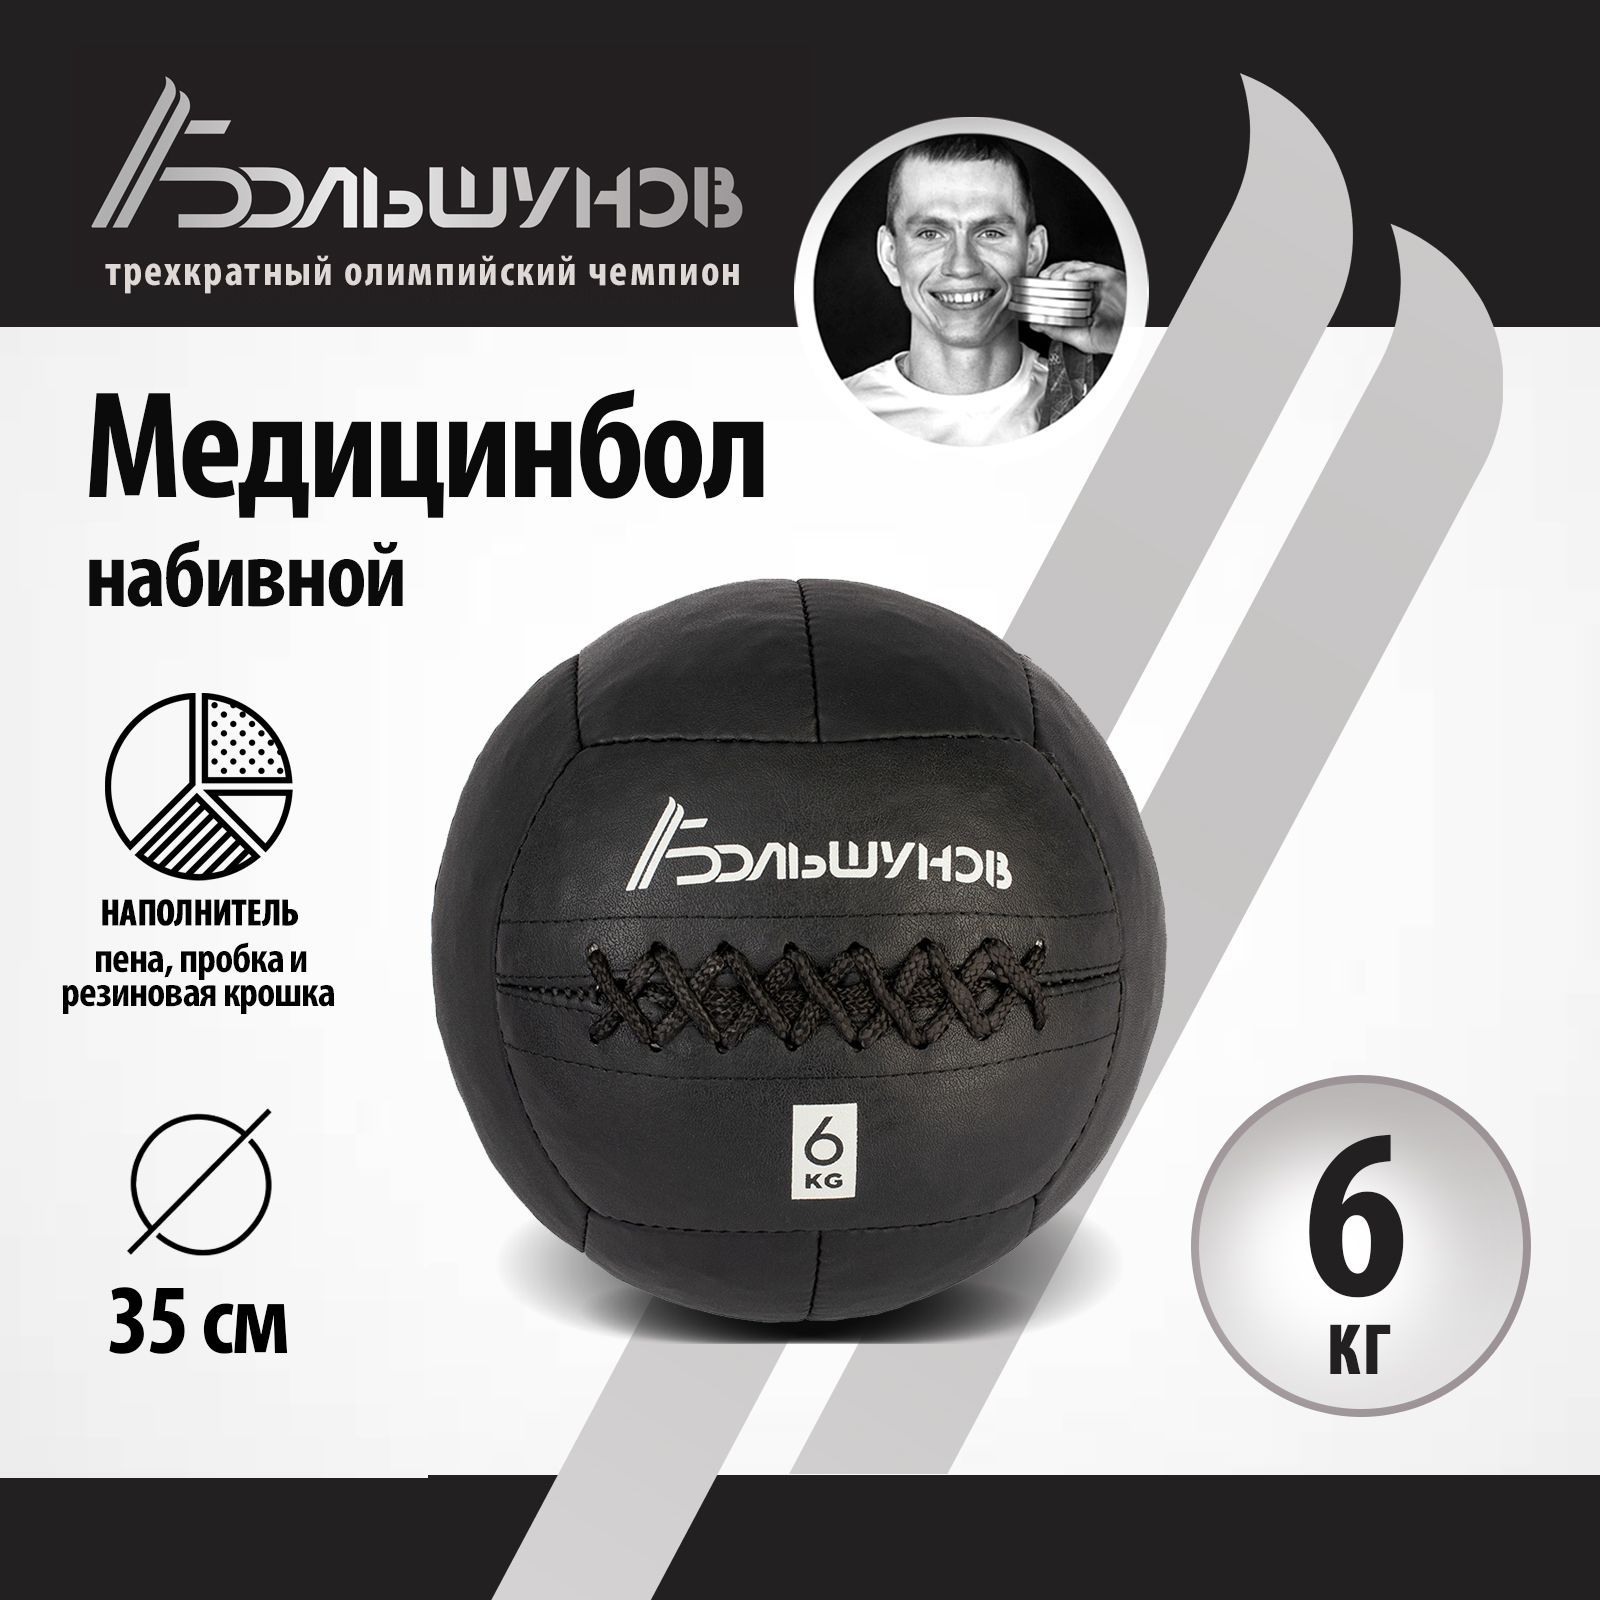 Медбол Александр Большунов, 35см, 6 кг